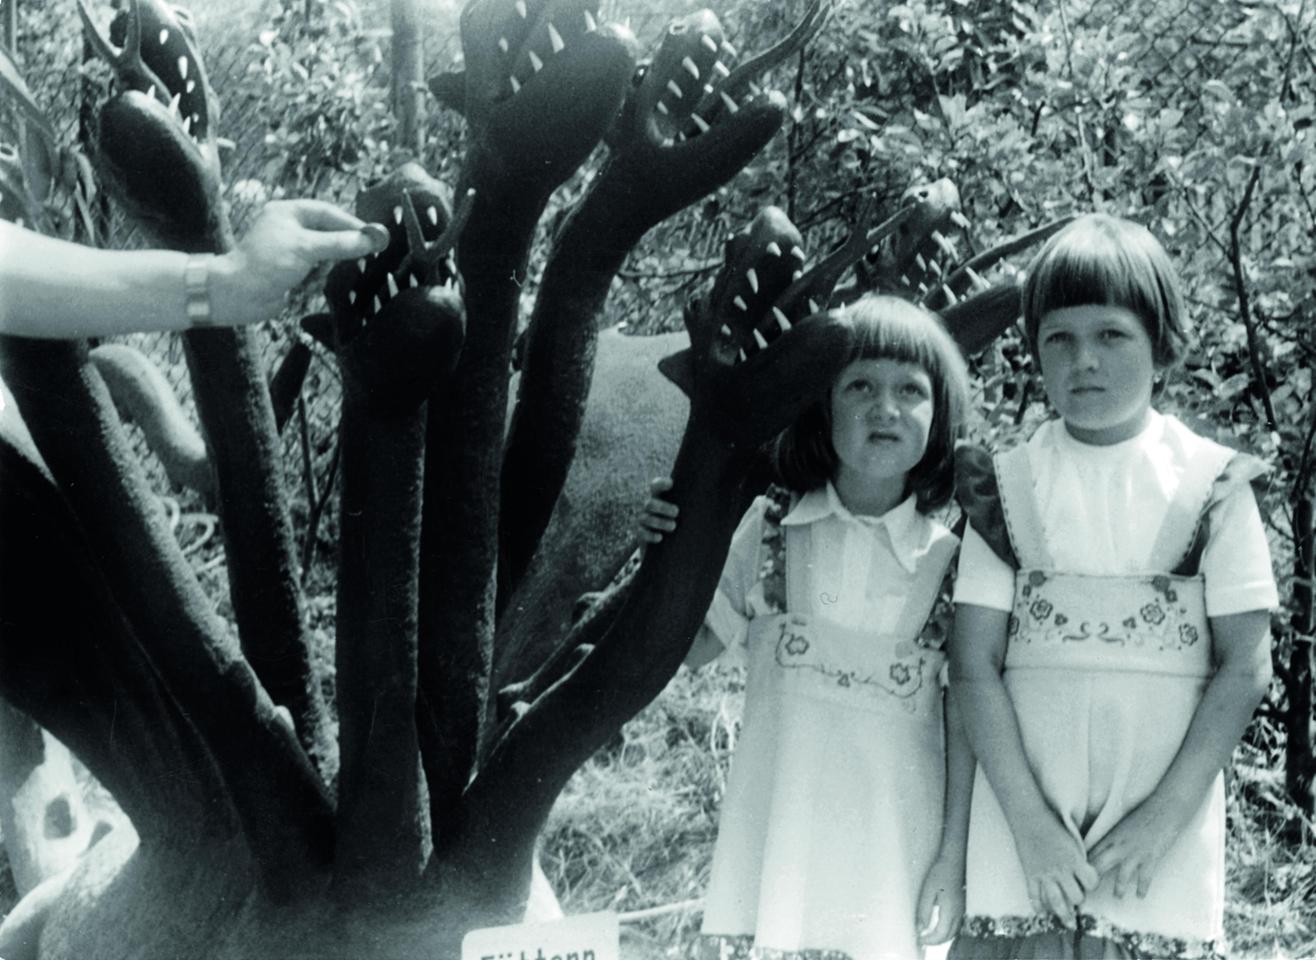 Zwei kleine Mädchen posieren neben dem Modell eines mehrköpfigen Monsters.